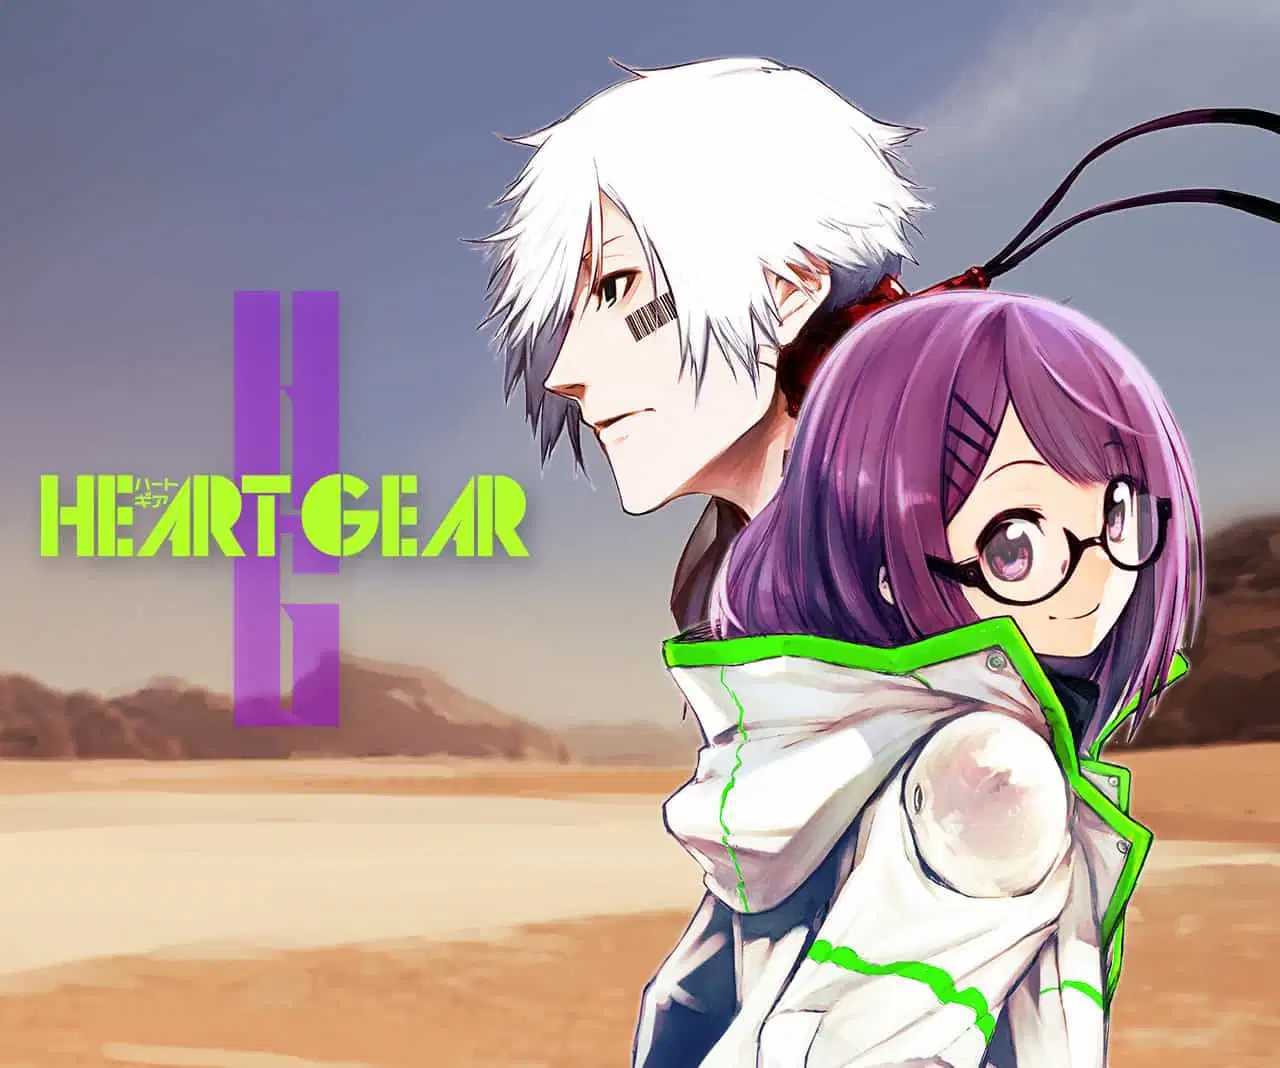 Manga Heart Gear akan kembali berlanjut pada 17 Agustus setelah 2 Tahun Hiatus